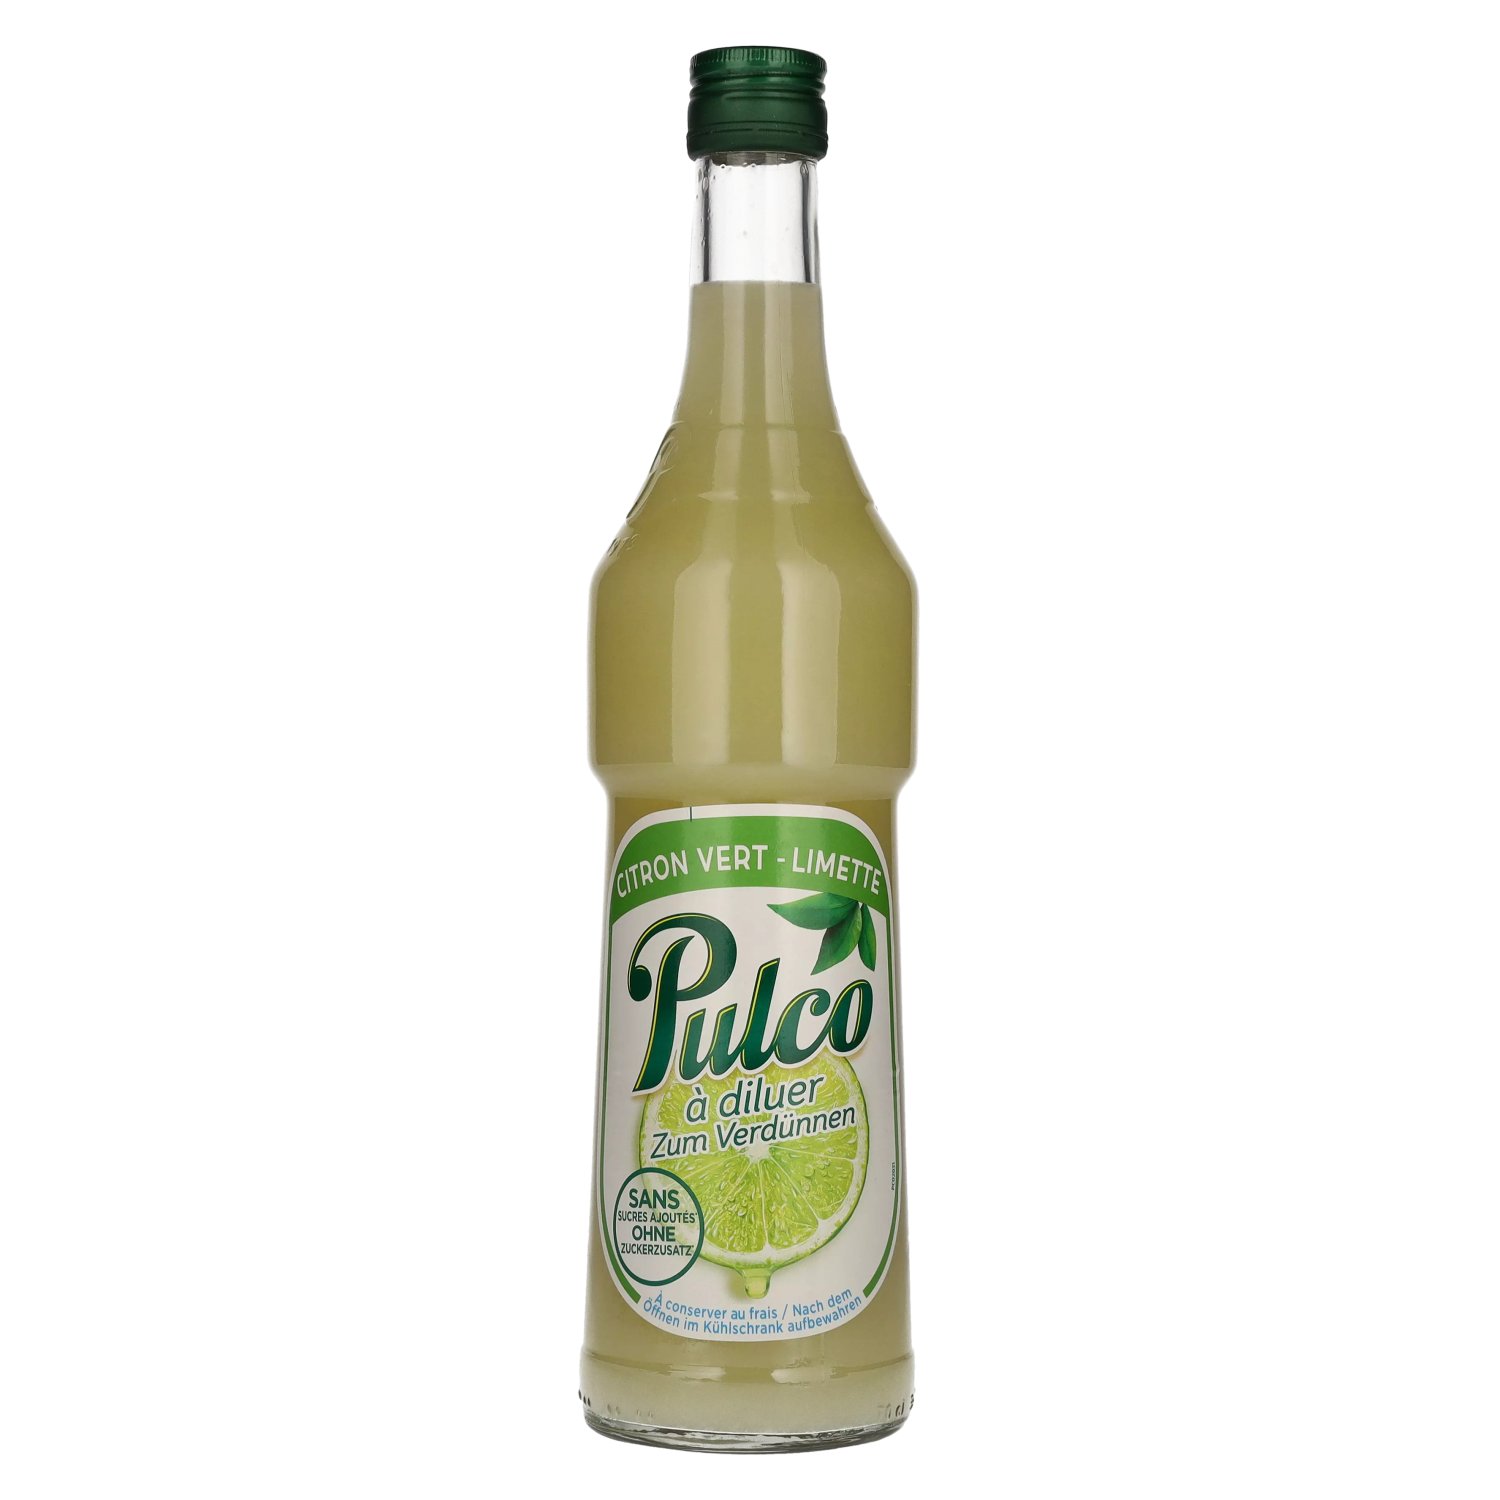 Pulco Citron 50 cl